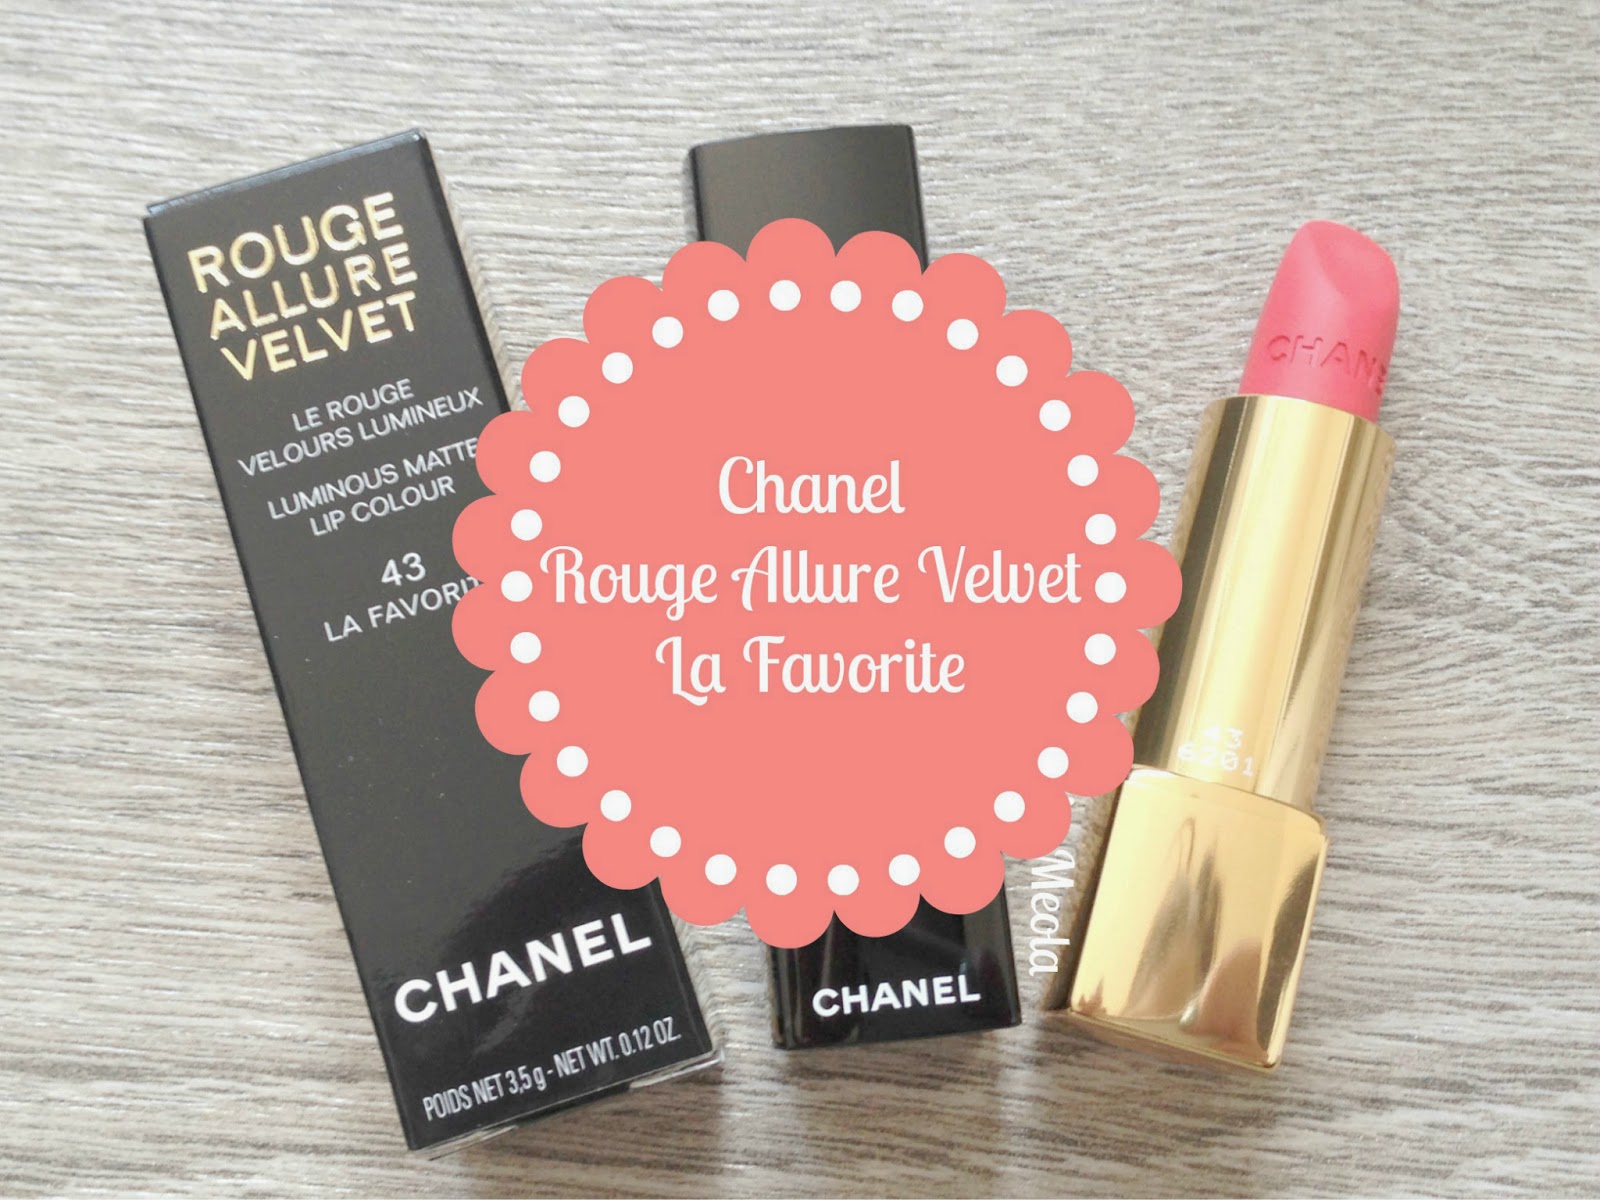 Chanel Rouge Allure Ink Matte Liquid Lip Colour Review